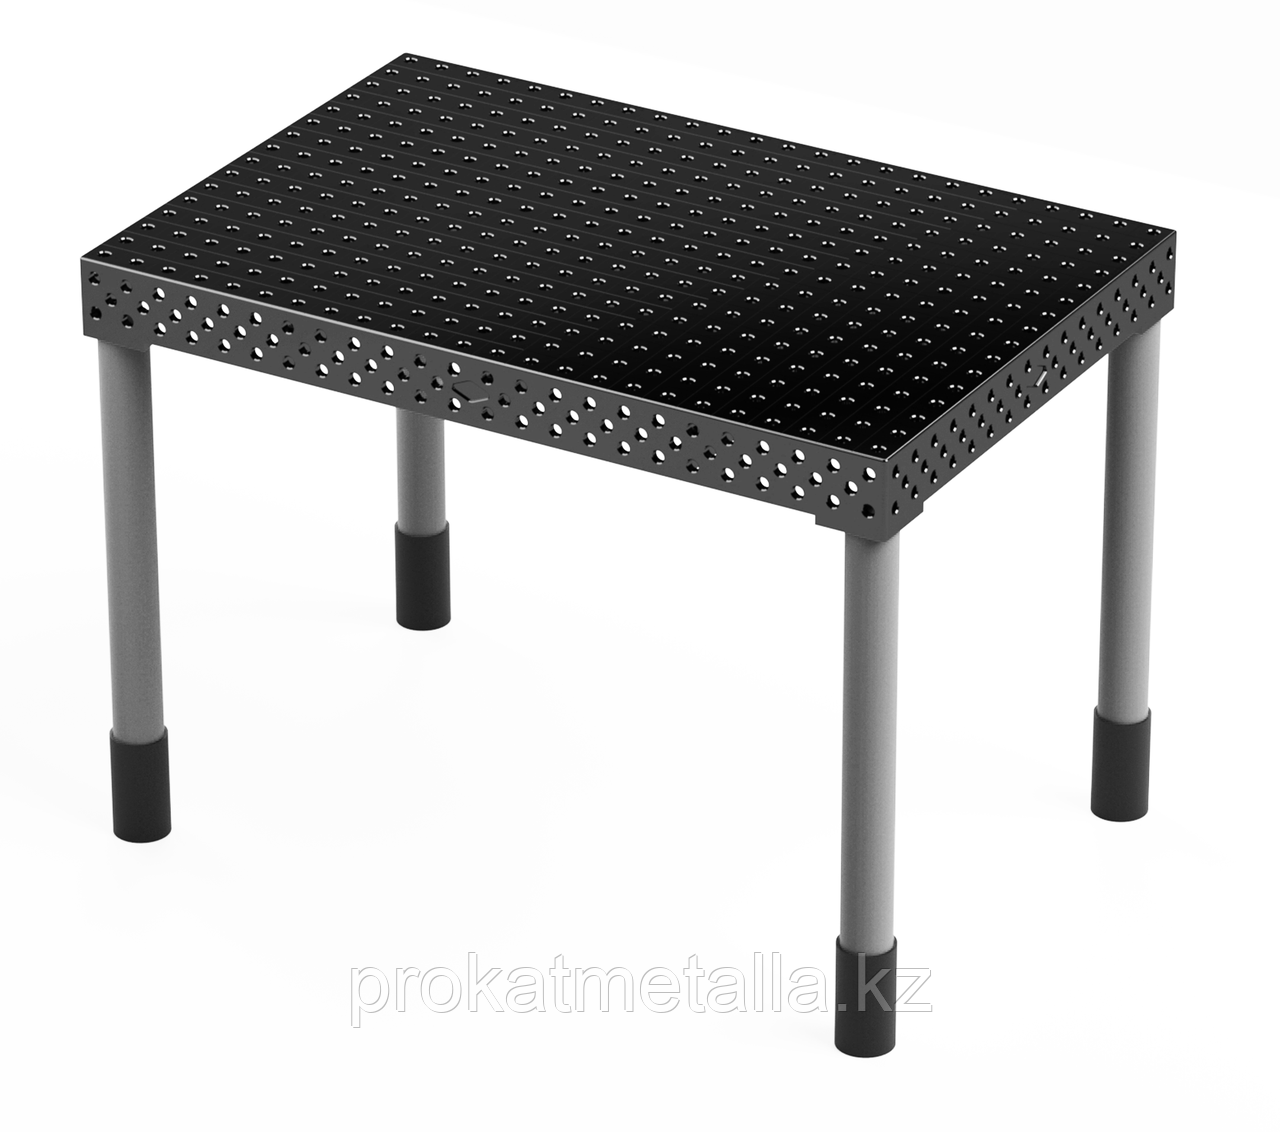 Сварочный стол "Стандарт" 1000х1000х150 (шаг 50 мм)